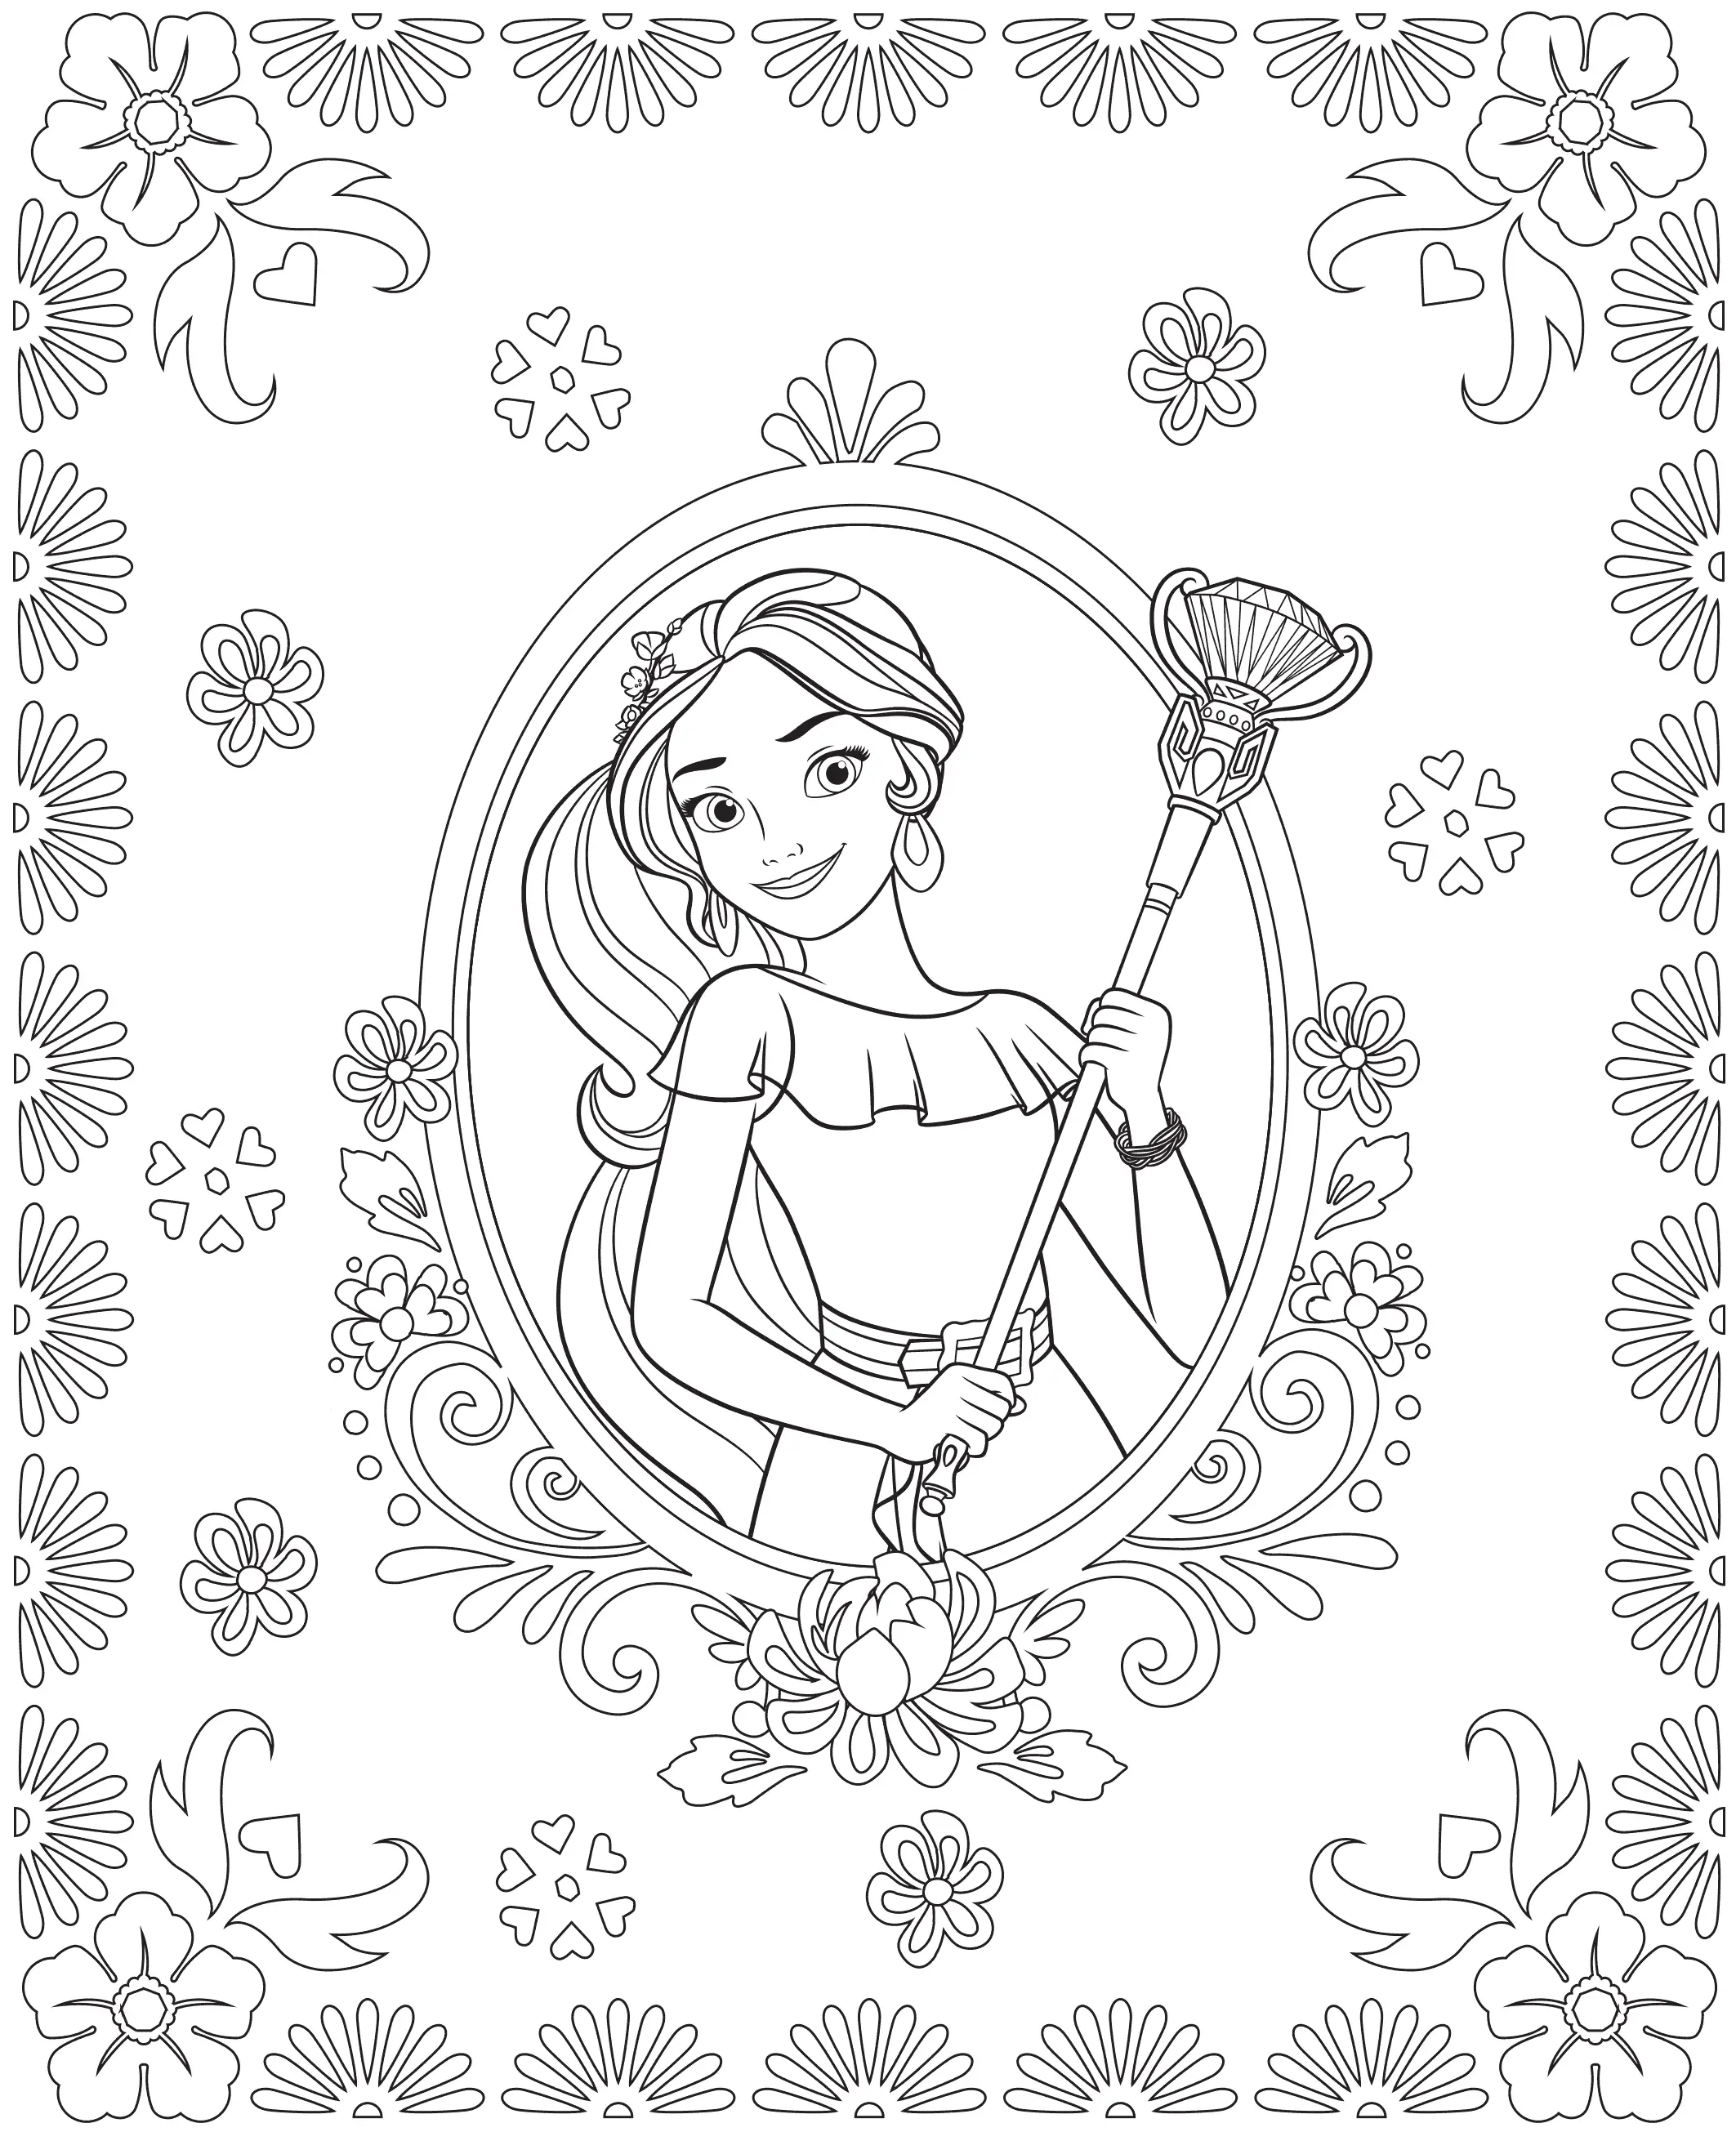 Elegant princess elena coloring book